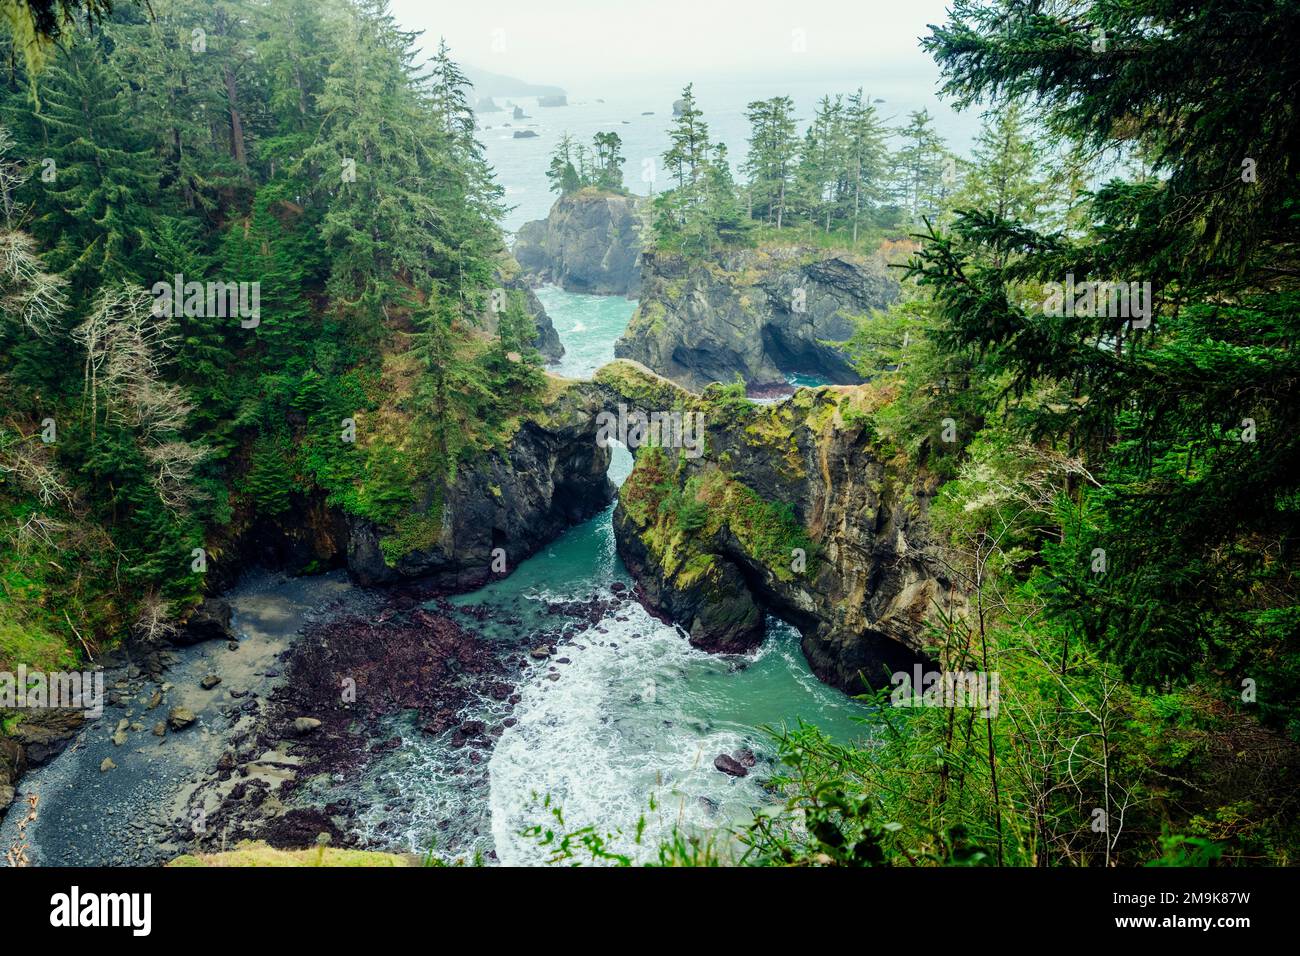 Entrada con arco natural, Samuel H. Boardman State Scenic Corridor, Oregon, EE.UU Foto de stock